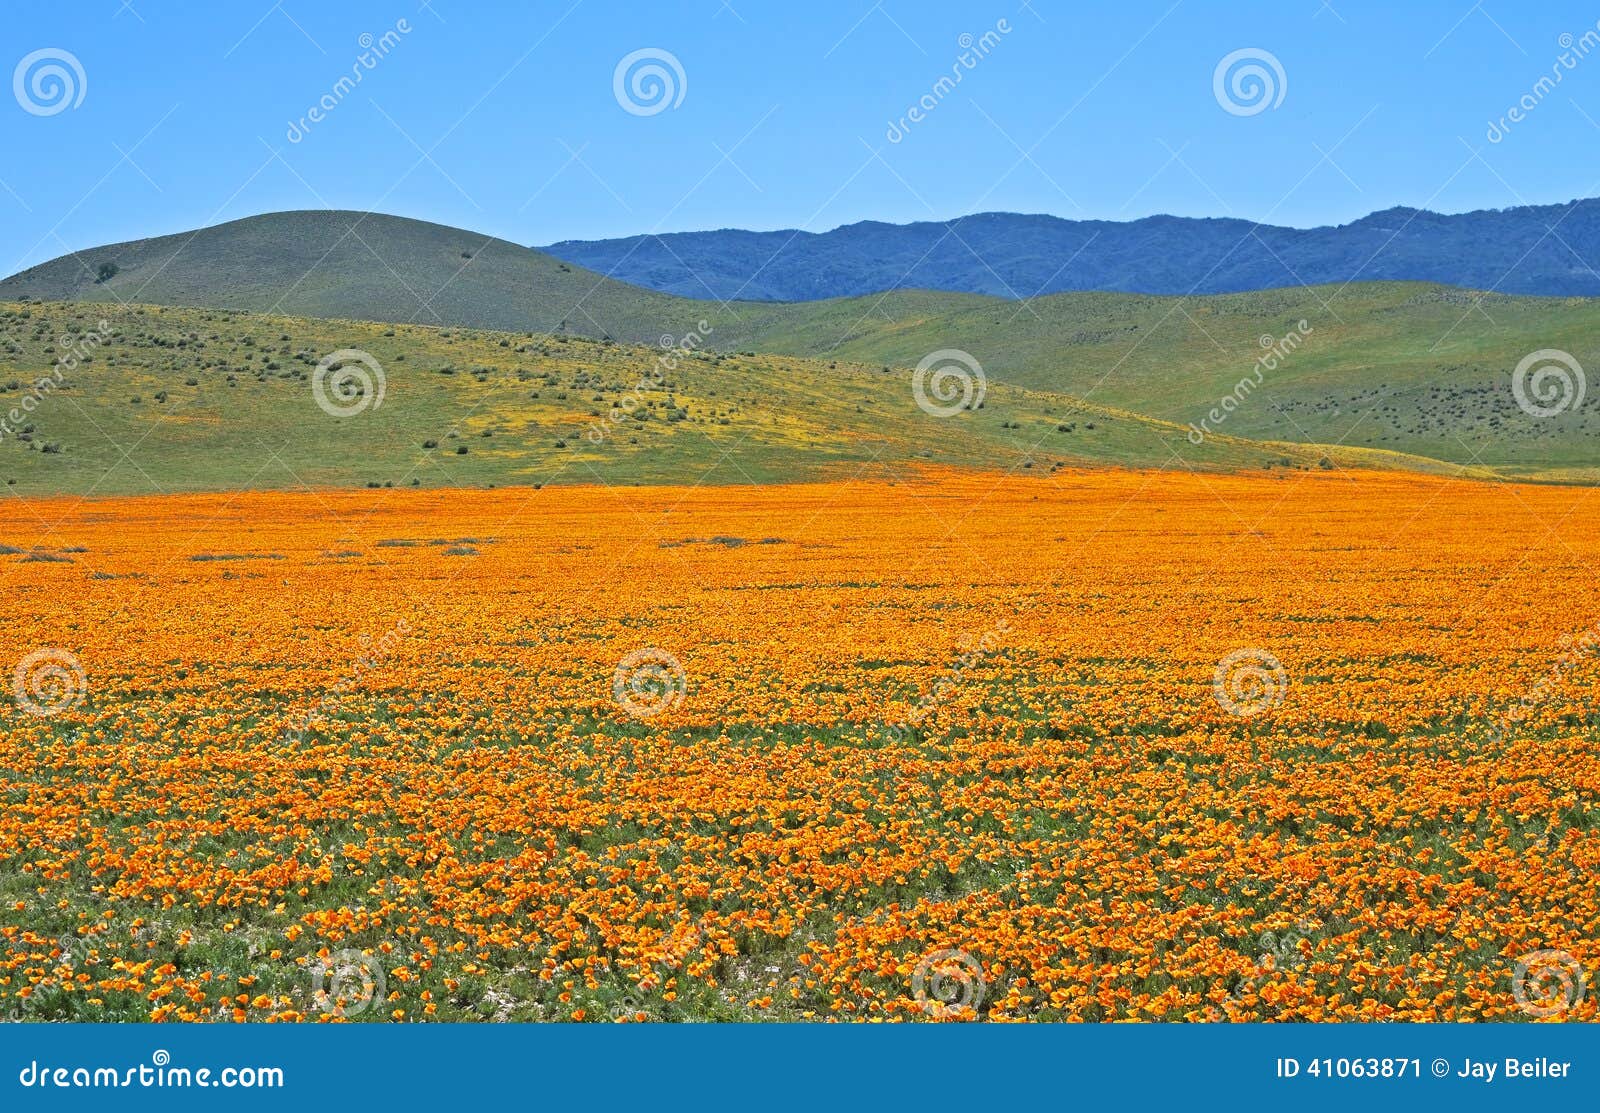 exquisite hills, california